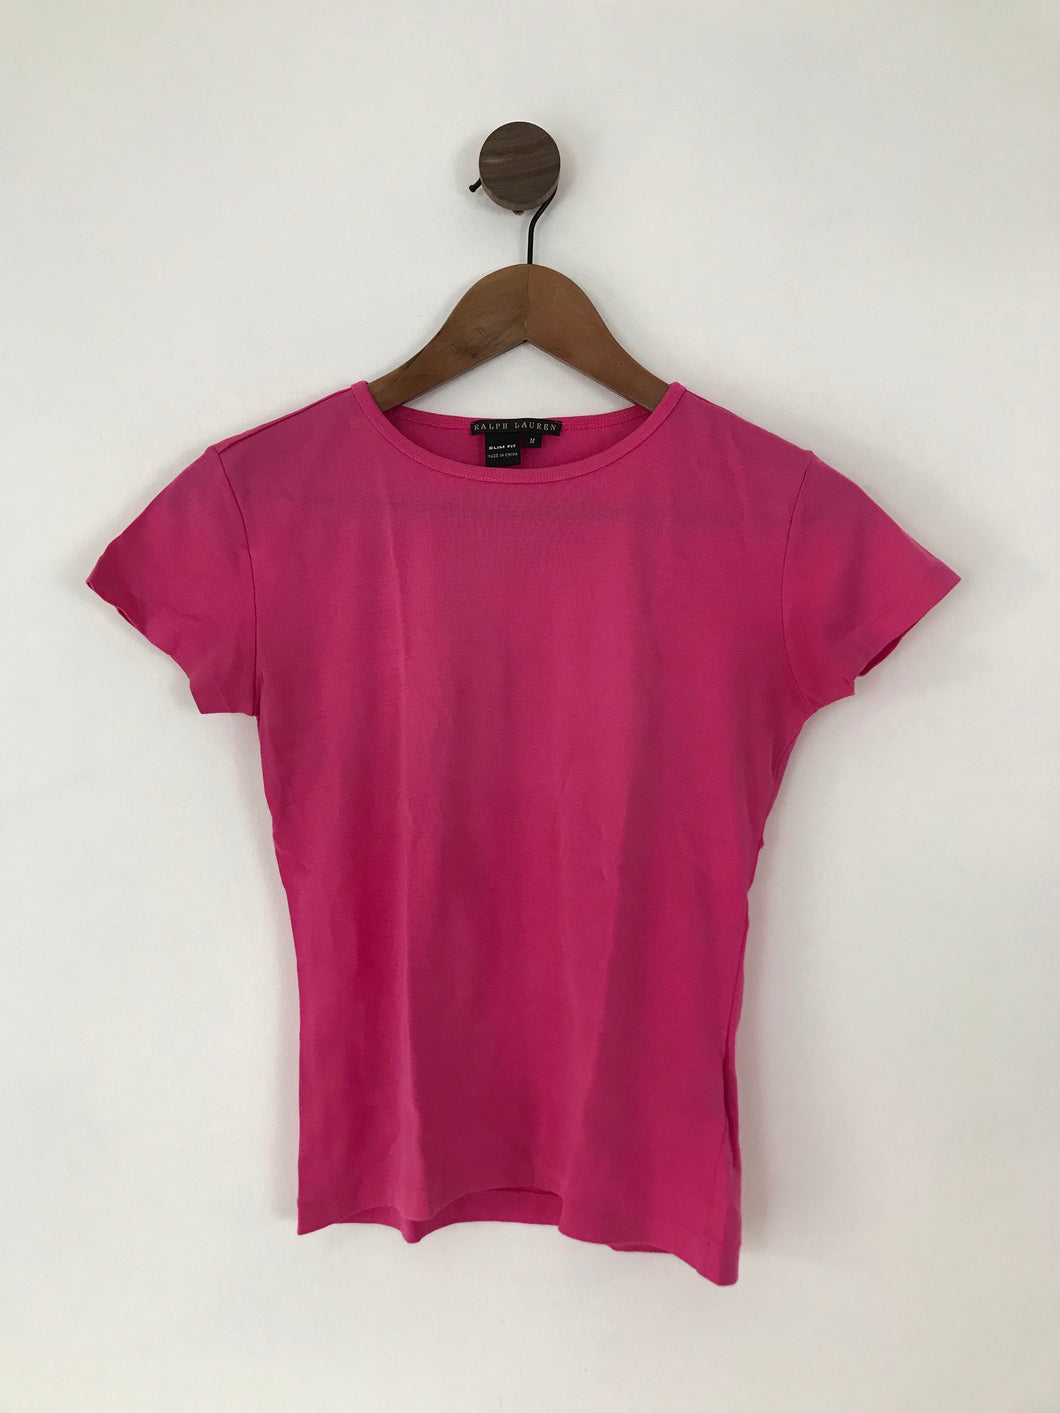 Ralph Lauren Women’s Slim Fit Tshirt | M UK10-12 | Pink